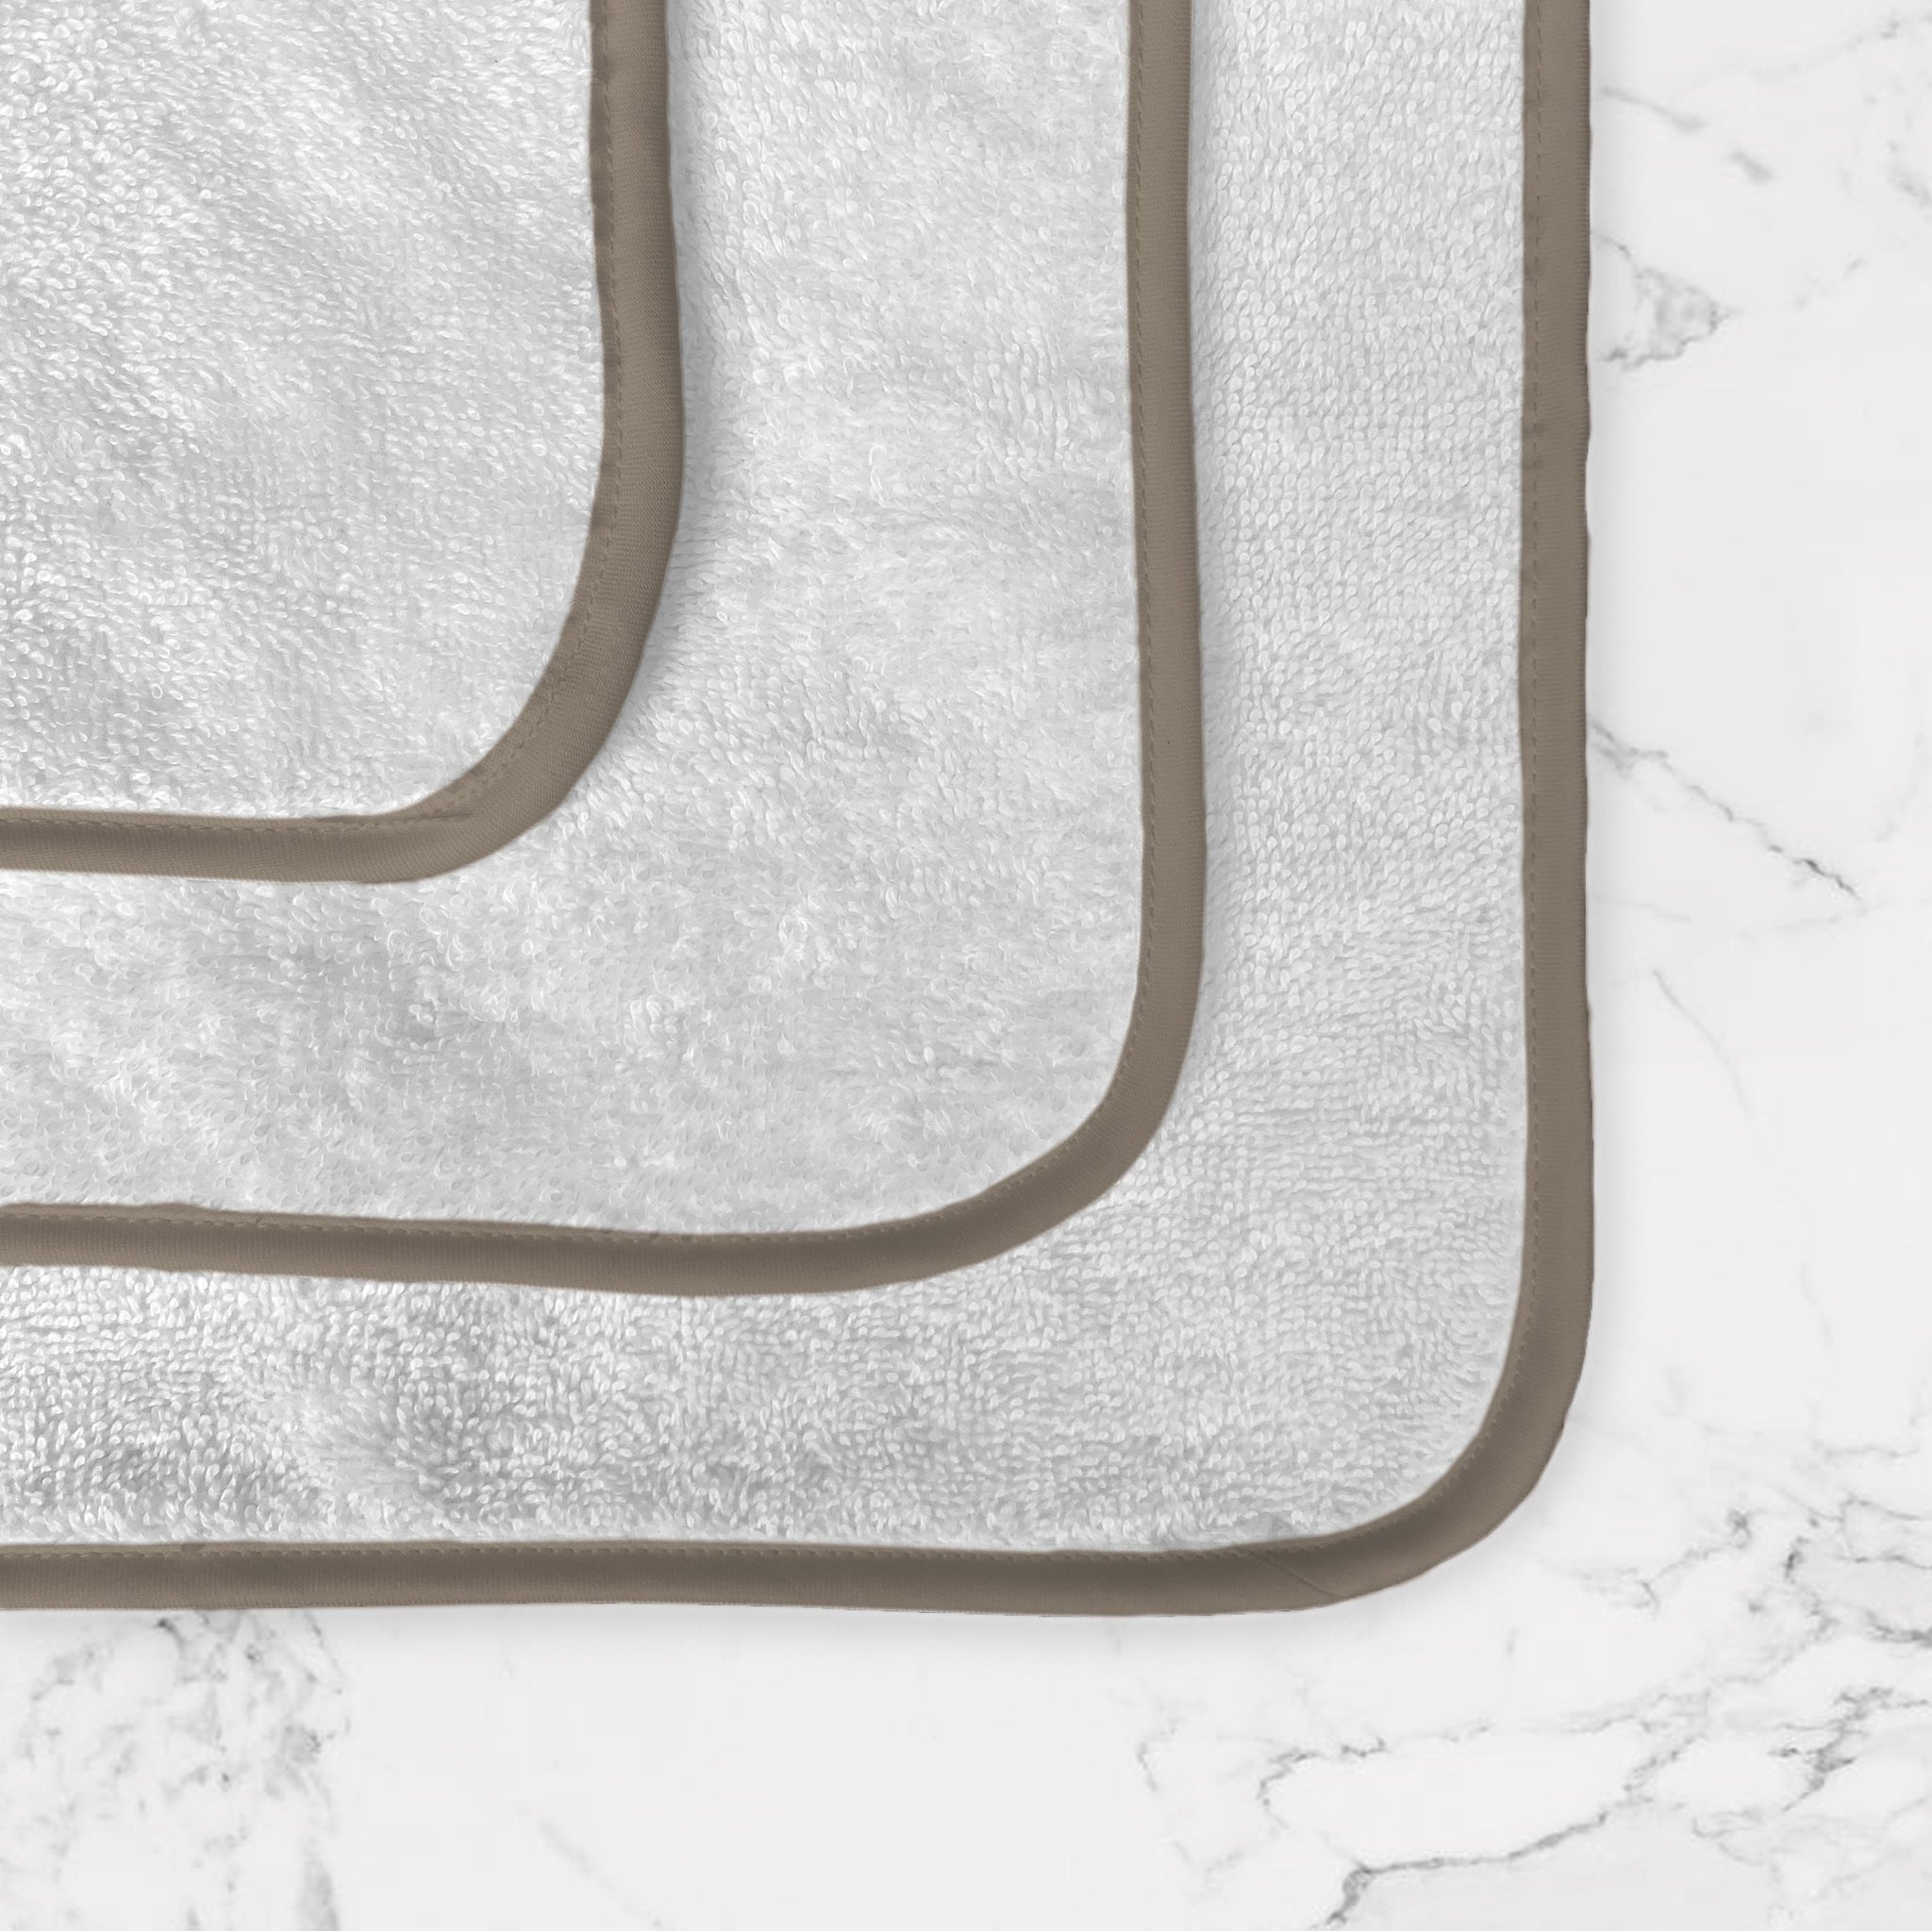 lavetta in puro cotone egiziano, bordo bronzo in 100% raso di puro cotone 300 fili e profilo interno in 100% raso di puro cotone 300 fili in contrasto colore bronzo, made in Italy. Scopri la nostra collezione completa di biancheria bagno.